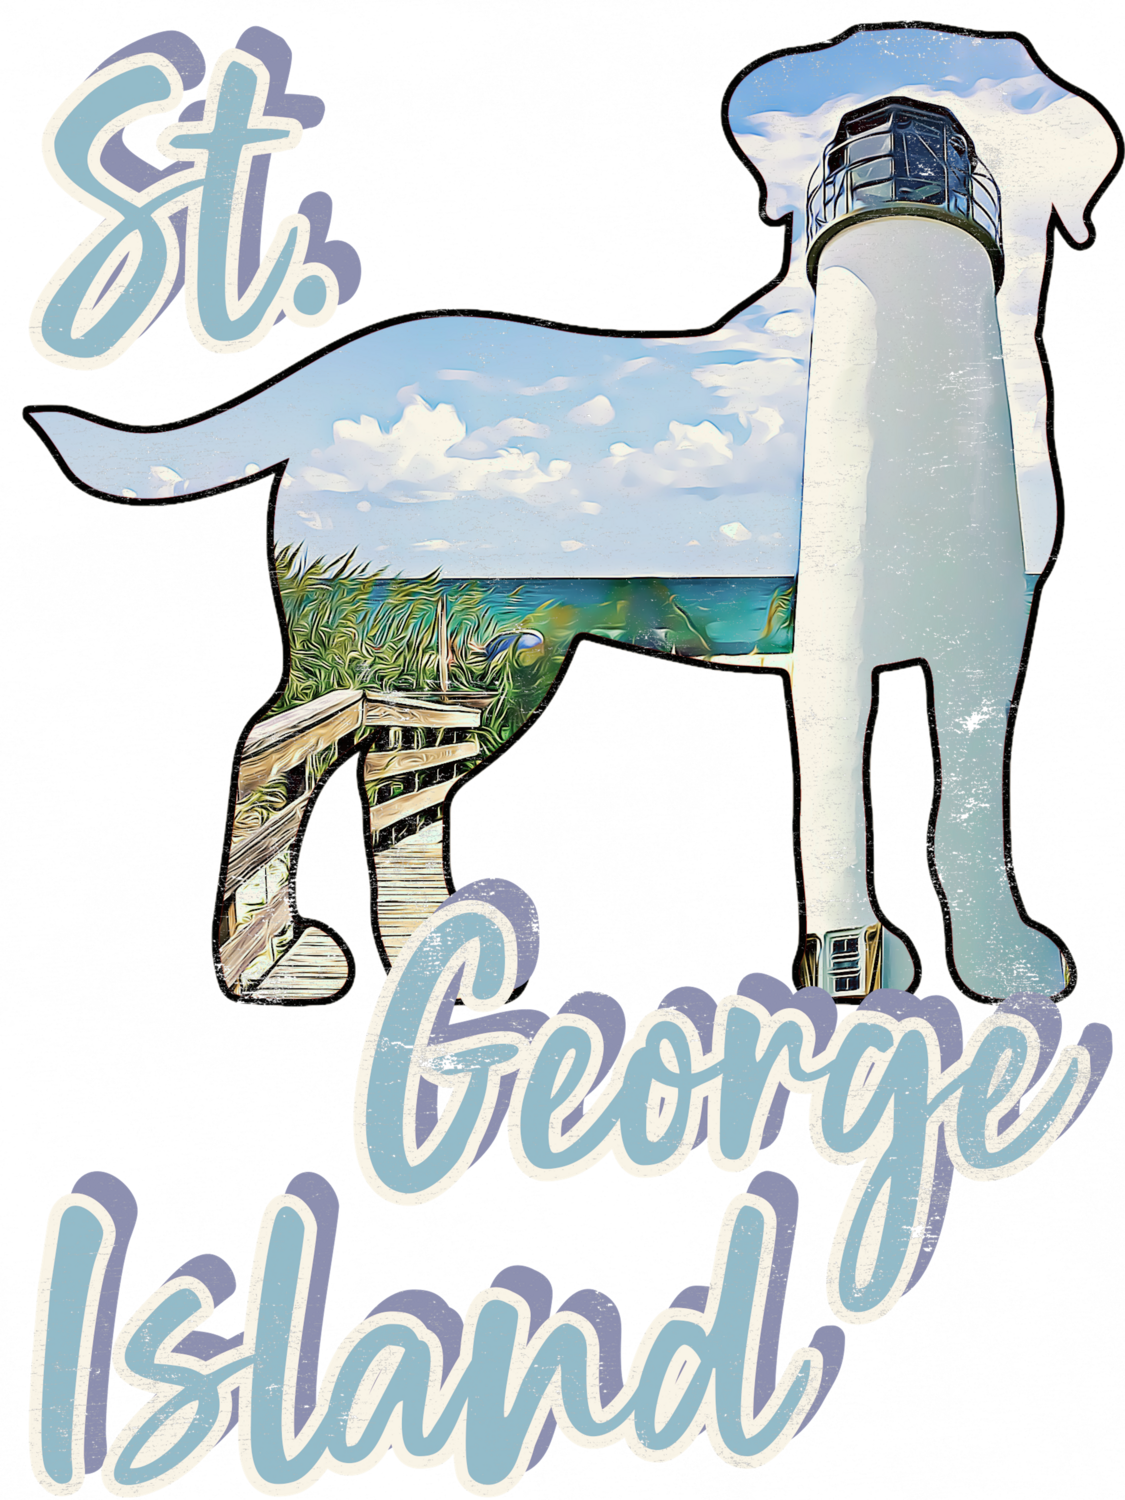 St George Vintage-Look Unisex t-shirt